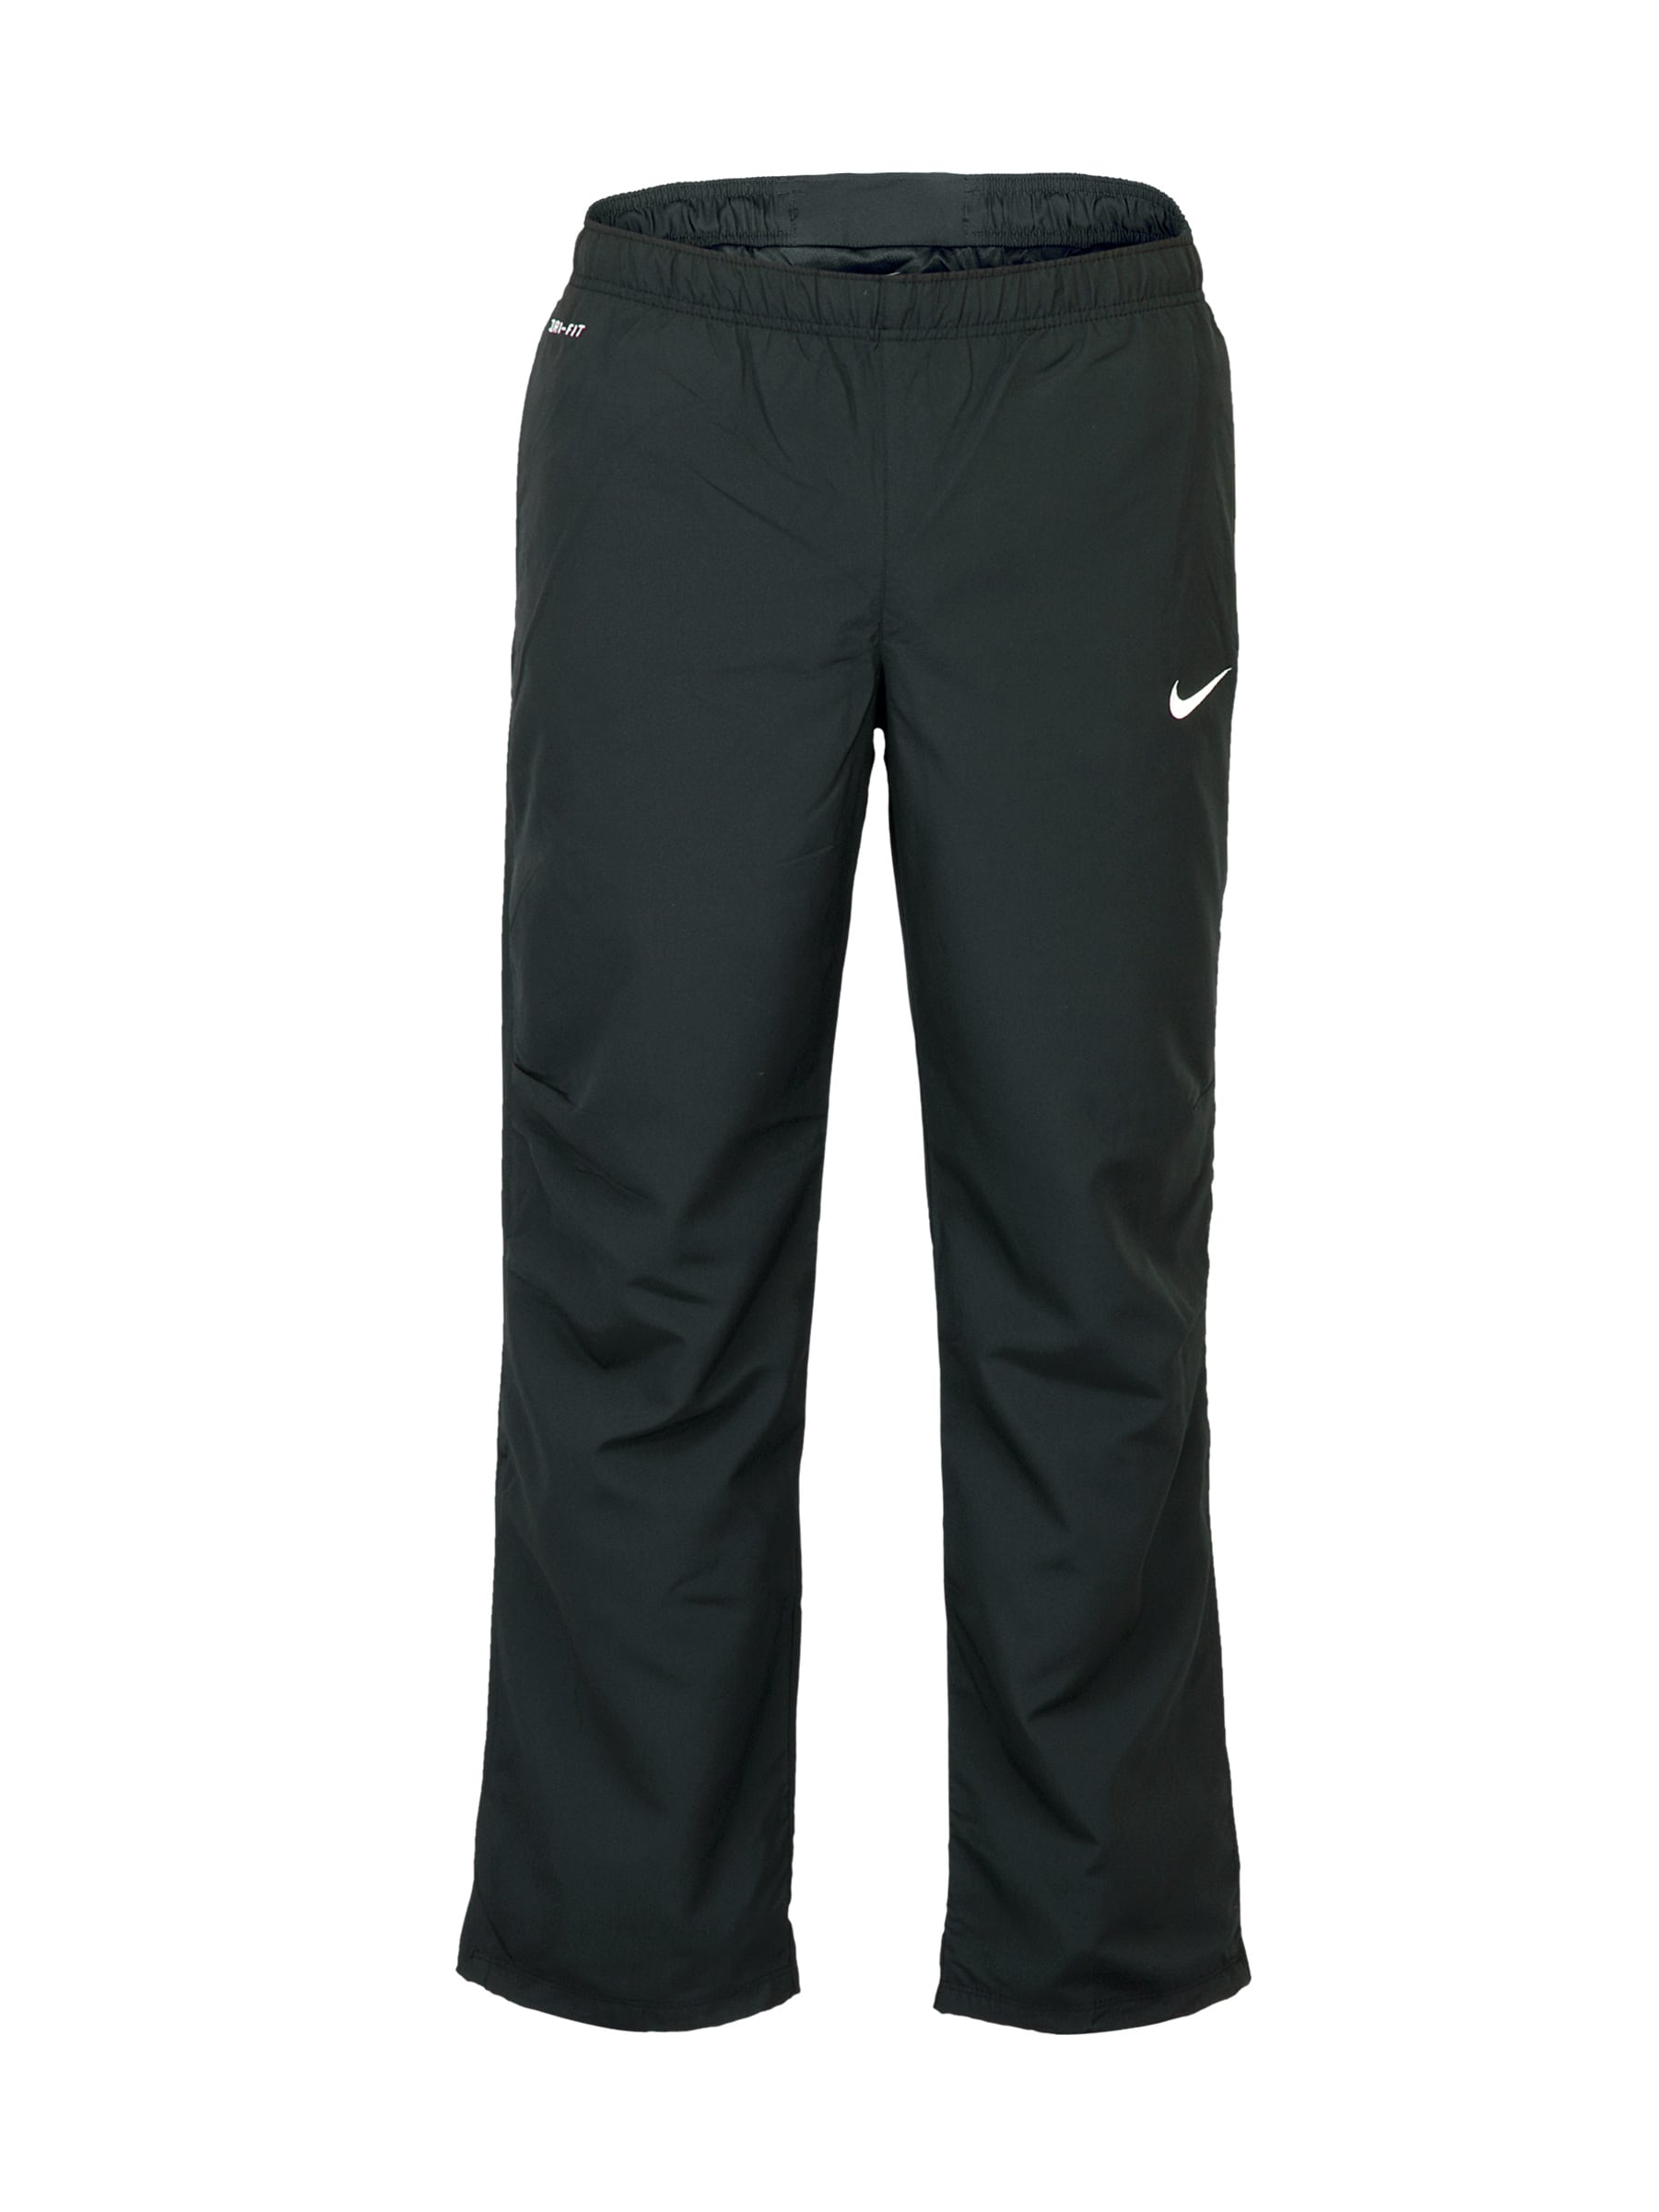 Nike Men Dri-Fit Black Track Pants